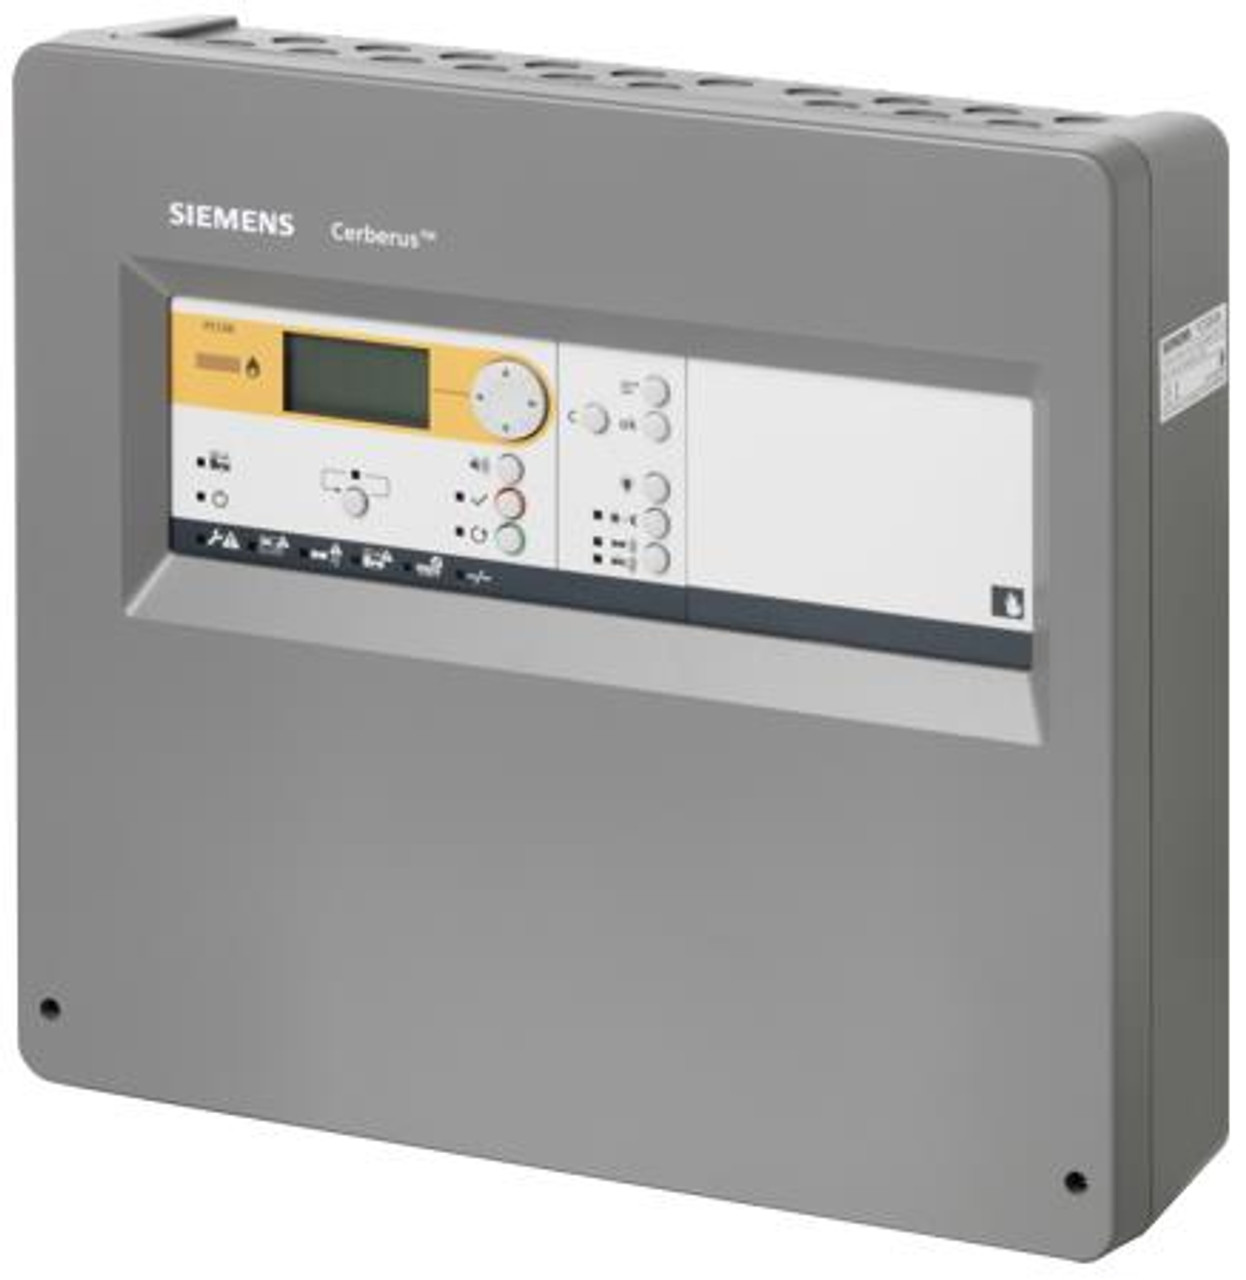 Siemens FC123-ZA, S54400-C129-A1, Fire control panel, 8 zones